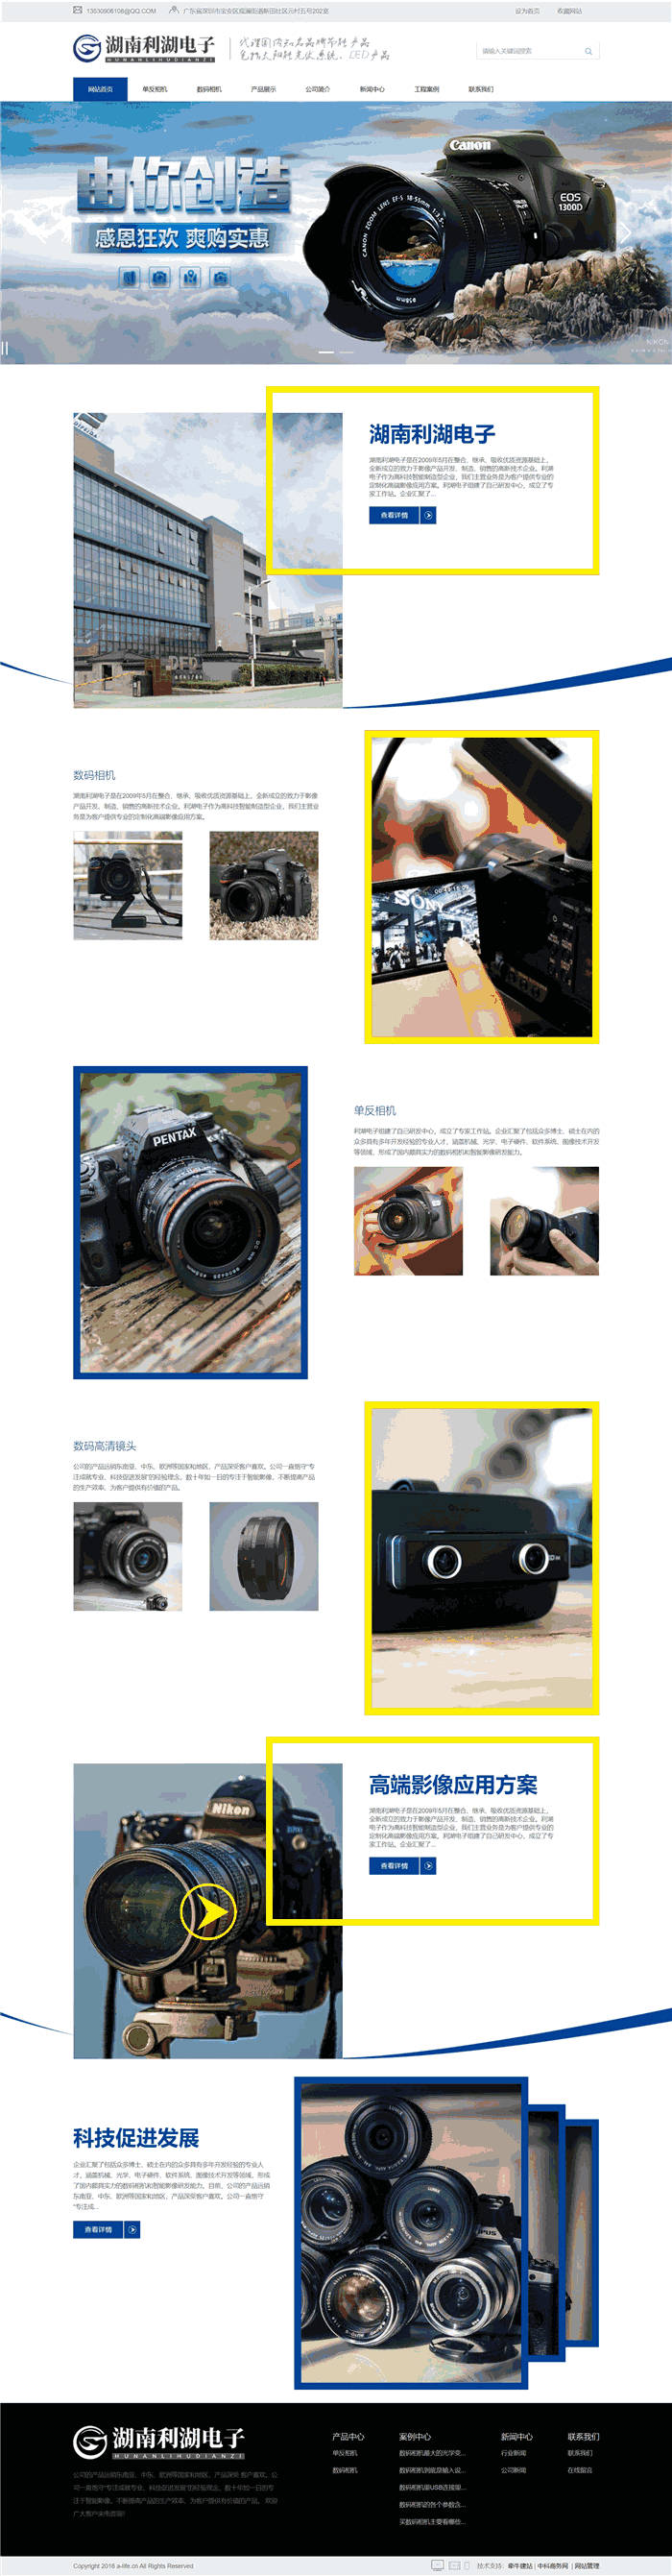 多合一单反相机数码相机网站WordPress网站模板演示图